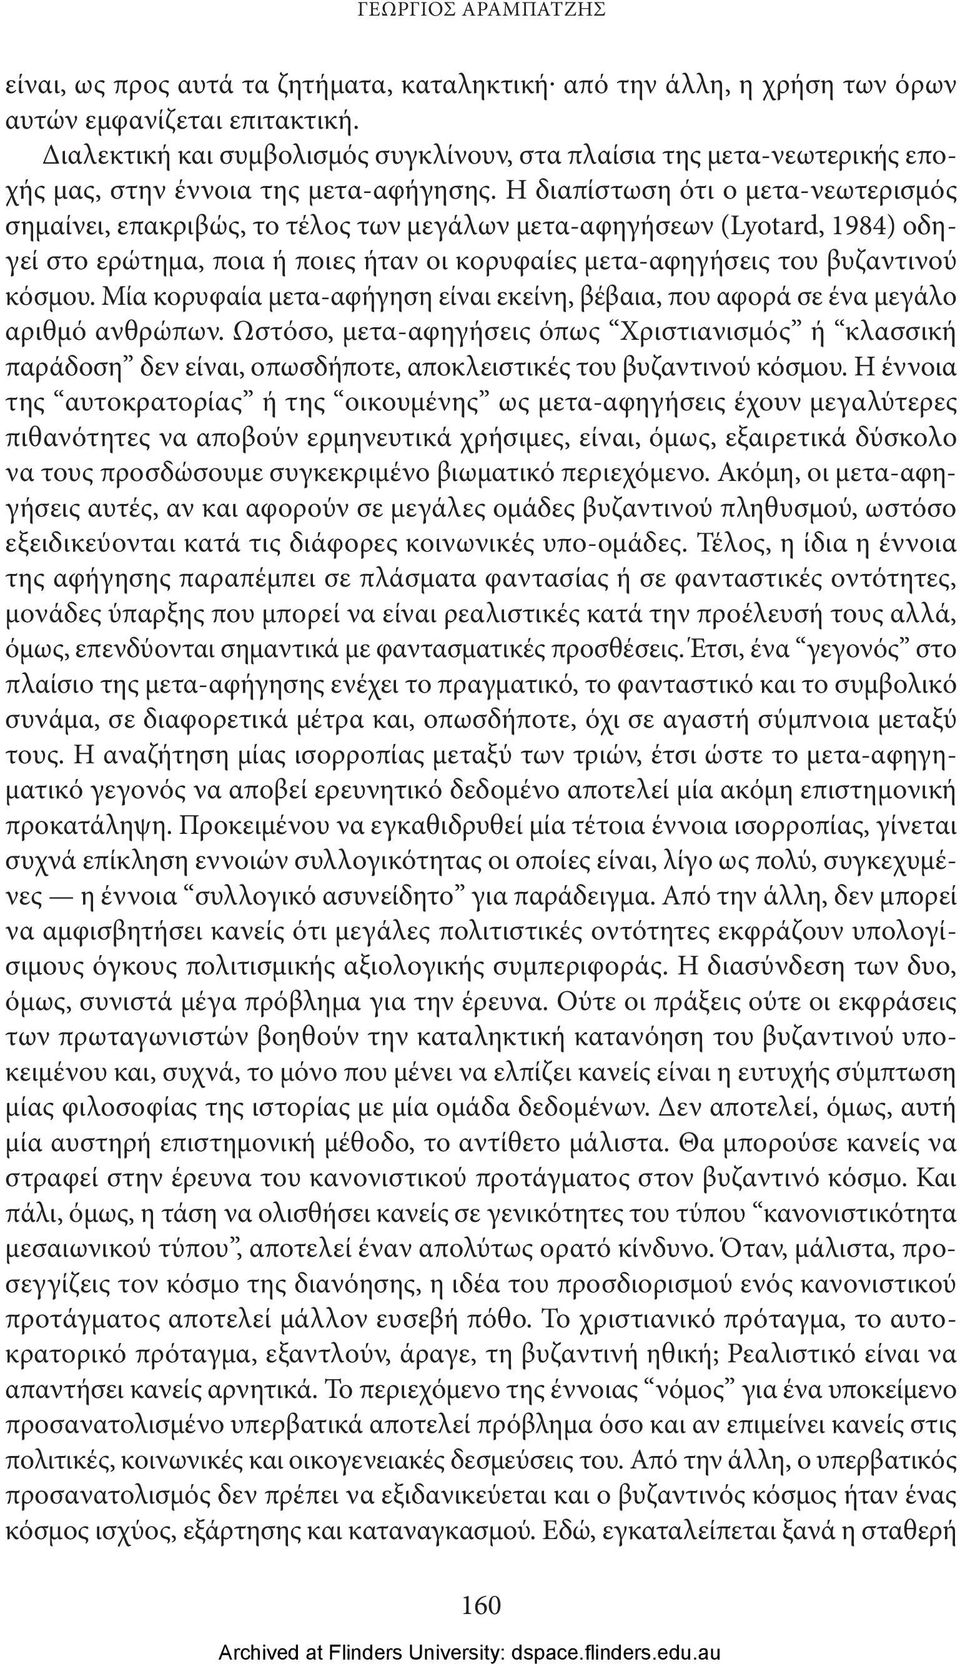 Η διαπίστωση ότι ο μετα-νεωτερισμός σημαίνει, επακριβώς, το τέλος των μεγάλων μετα-αφηγήσεων (Lyotard, 1984) οδηγεί στο ερώτημα, ποια ή ποιες ήταν οι κορυφαίες μετα-αφηγήσεις του βυζαντινού κόσμου.